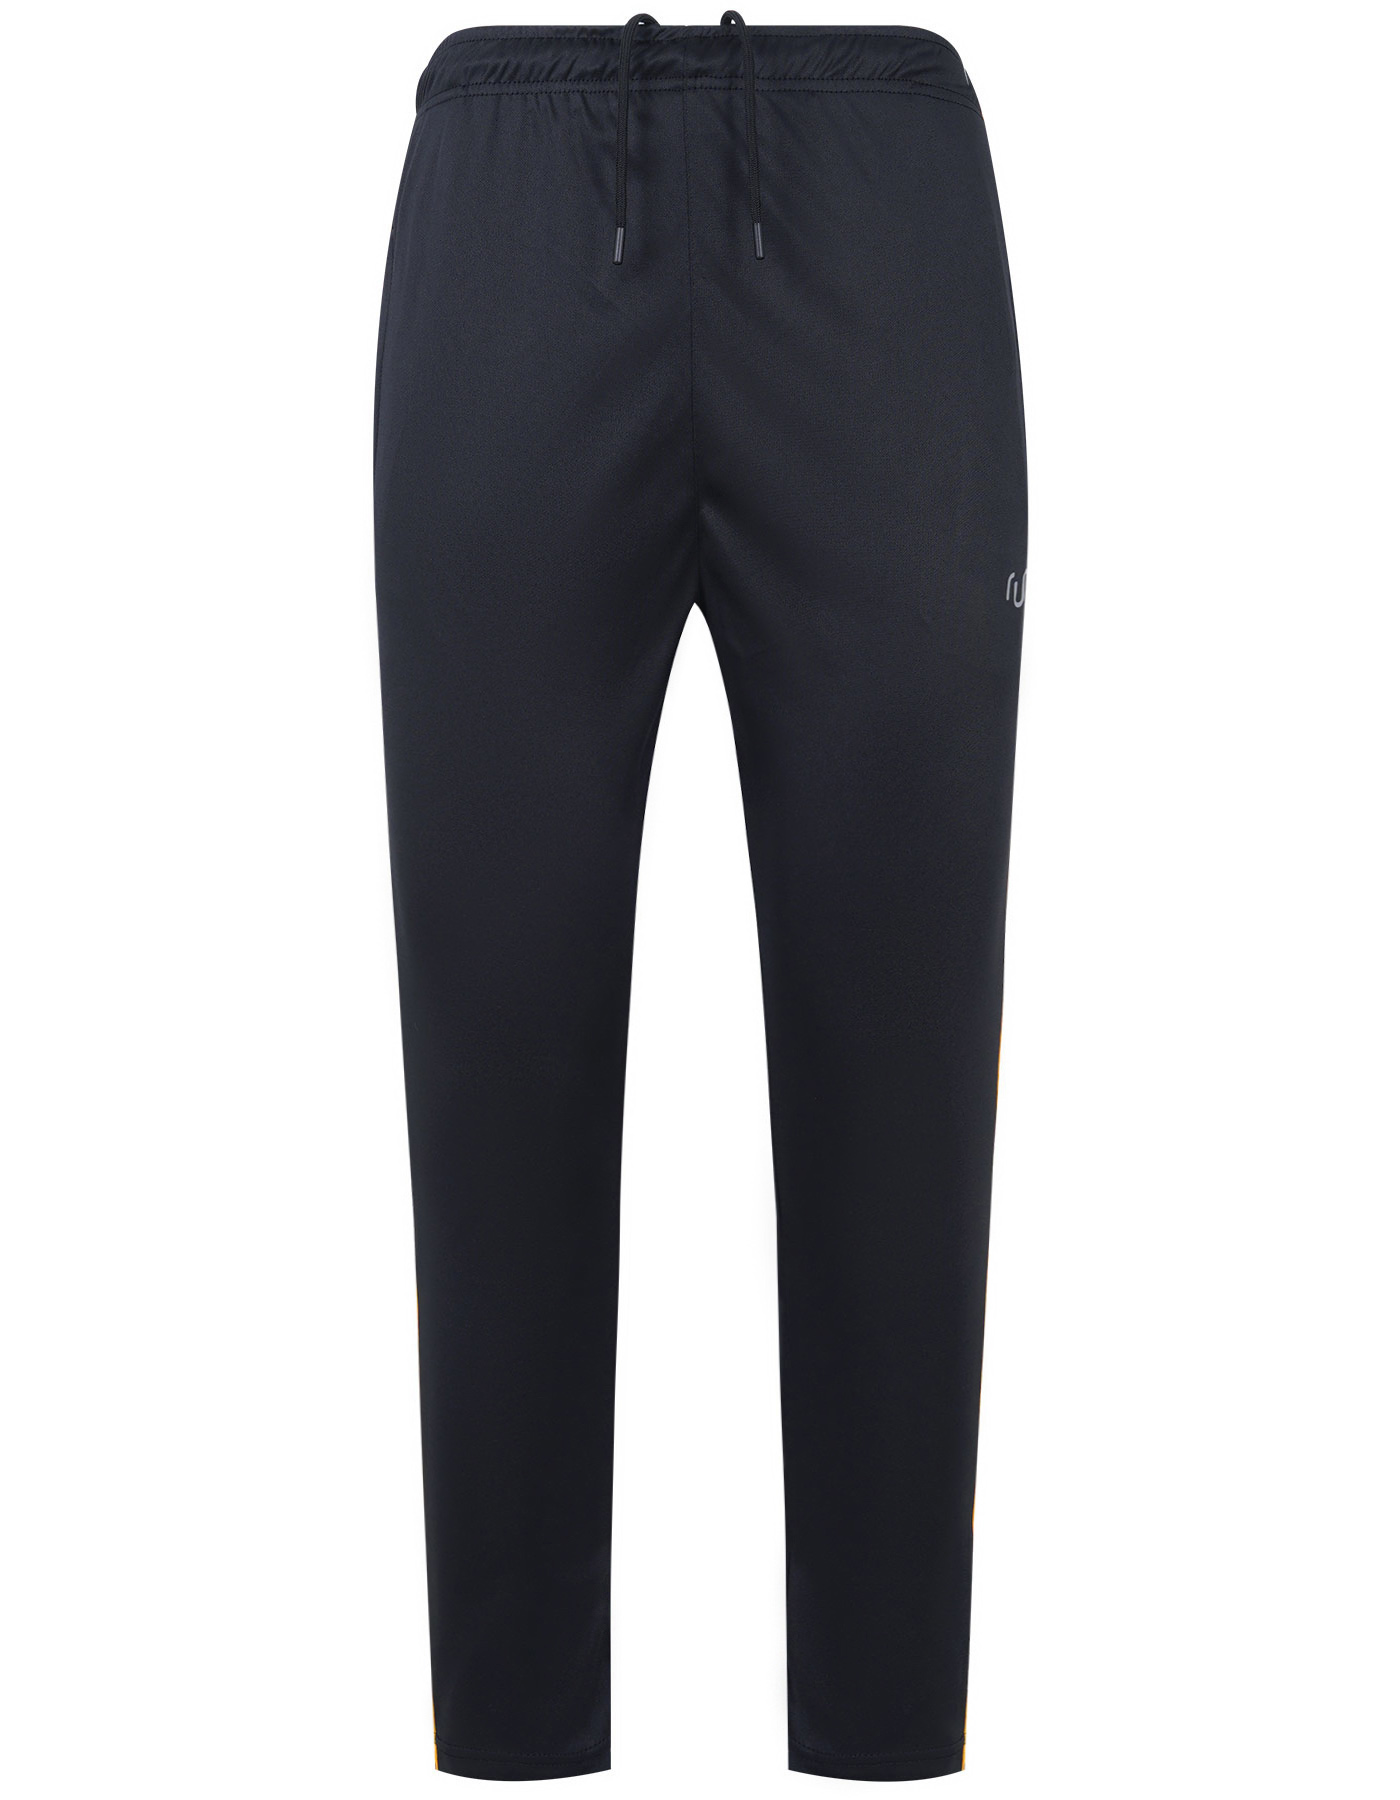 Gym Trouser Black FGTR2312-1 N/I Uniworth